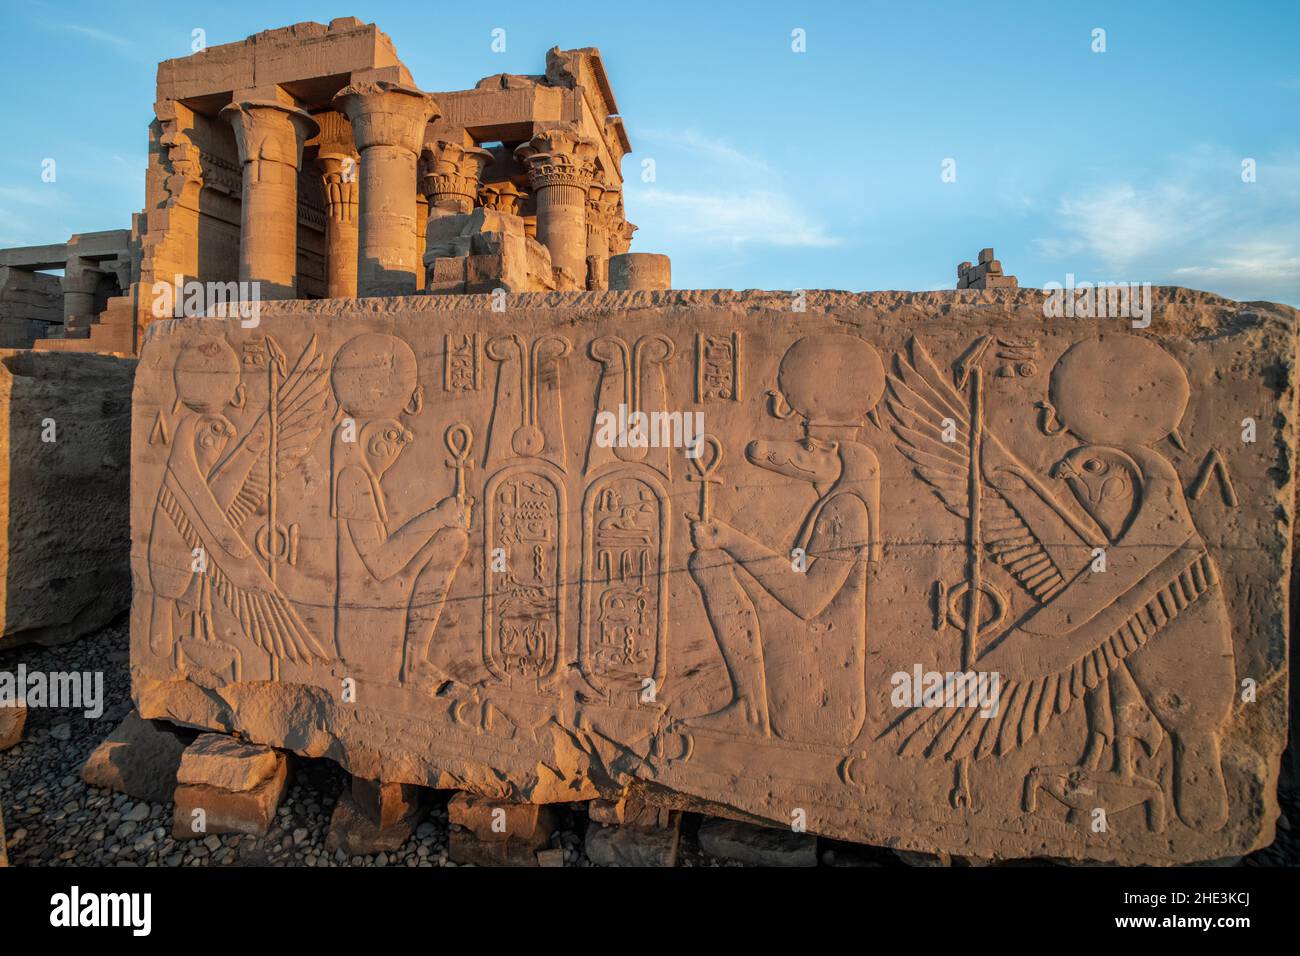 Ein Abschnitt eines Steins mit komplizierten Schnitzereien von Sobek und Horus, alten ägyptischen Göttern, aus dem Tempel von Kom Ombo in Ägypten. Stockfoto